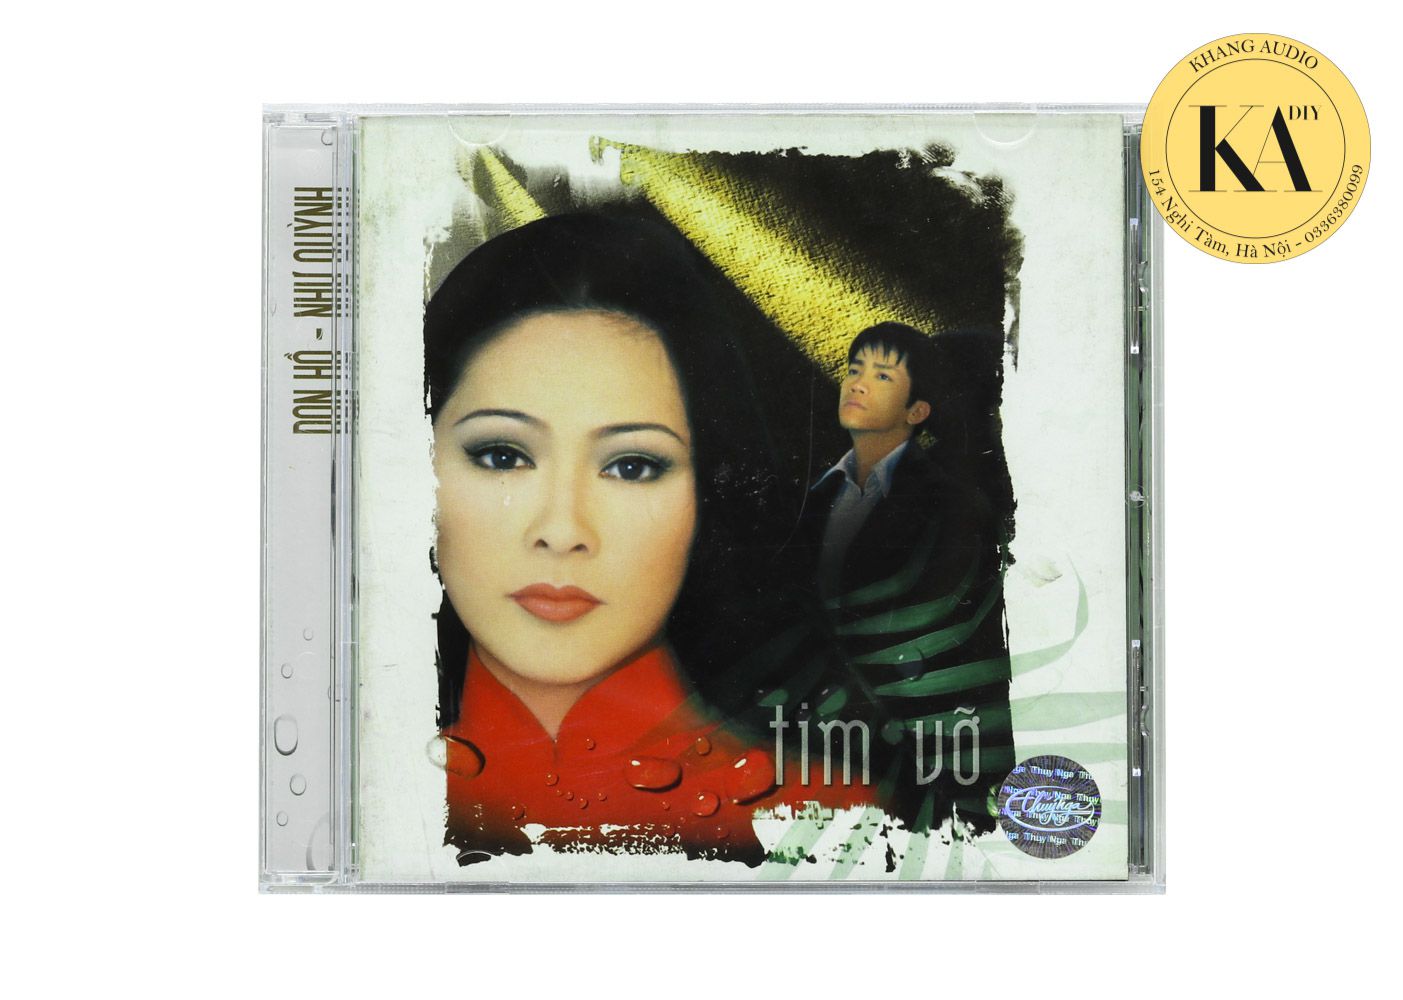 Tim Vỡ - Như Quỳnh Khang Audio 0336380099